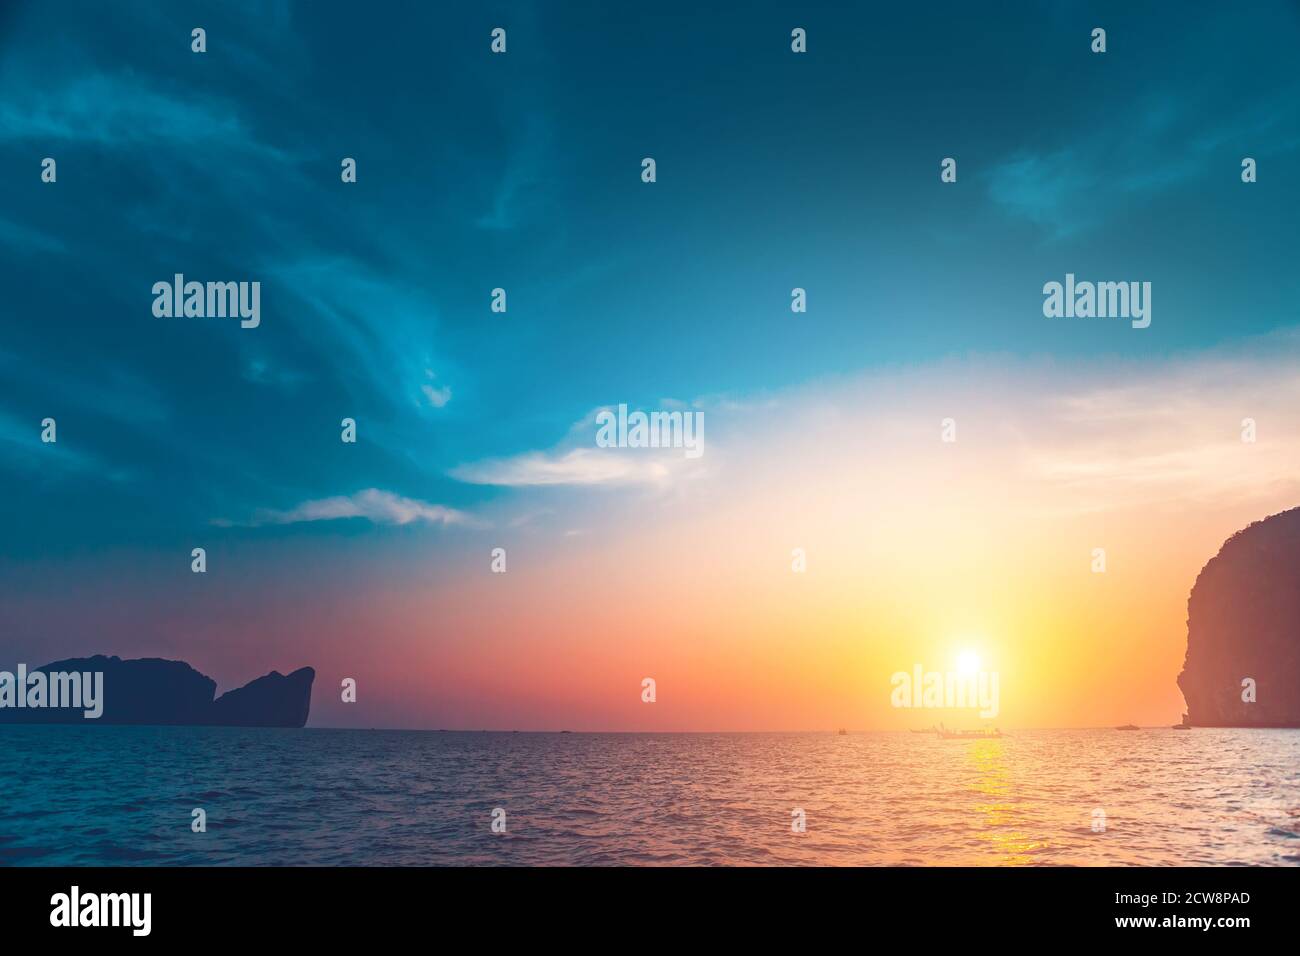 Asie océan coucher de soleil: Personne silhouette des îles de Thaïlande sur l'eau surfase. Paysage tropical thaïlandais épique dans une lumière douce au soleil. Un paysage marin asiatique exceptionnel dans une prise de vue cinématographique Banque D'Images